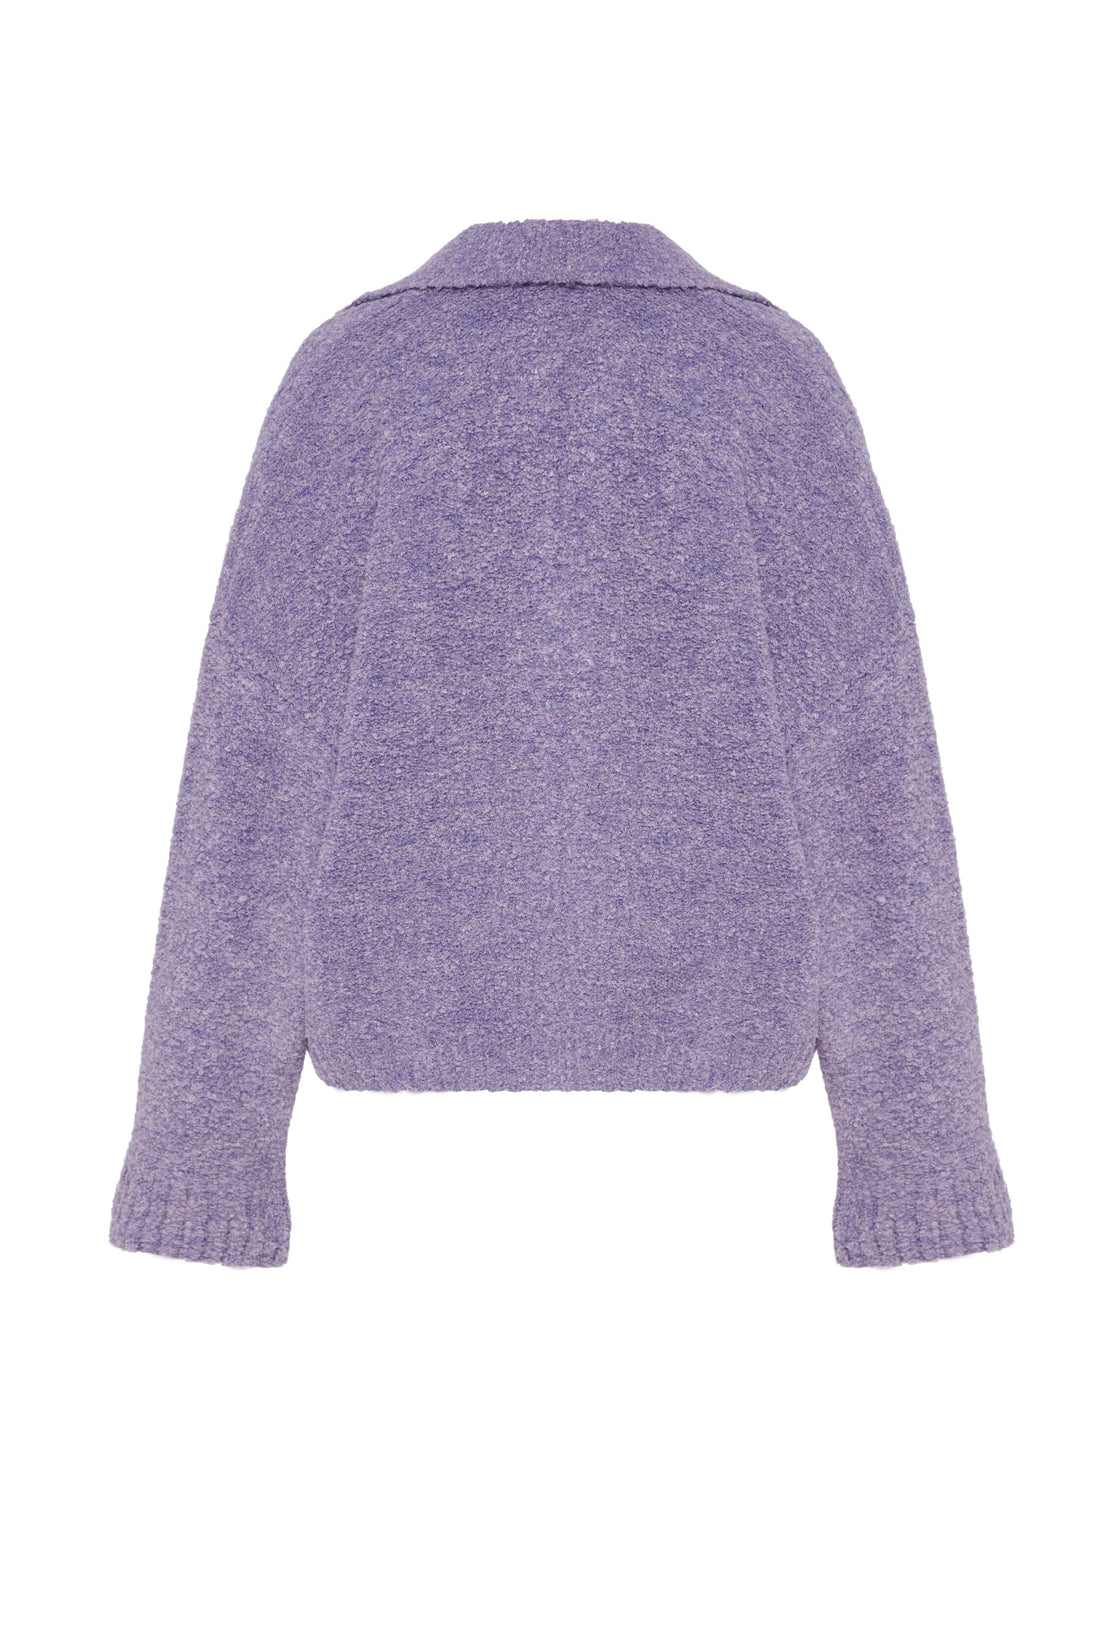 Bouclé svetr, fialový (0202)